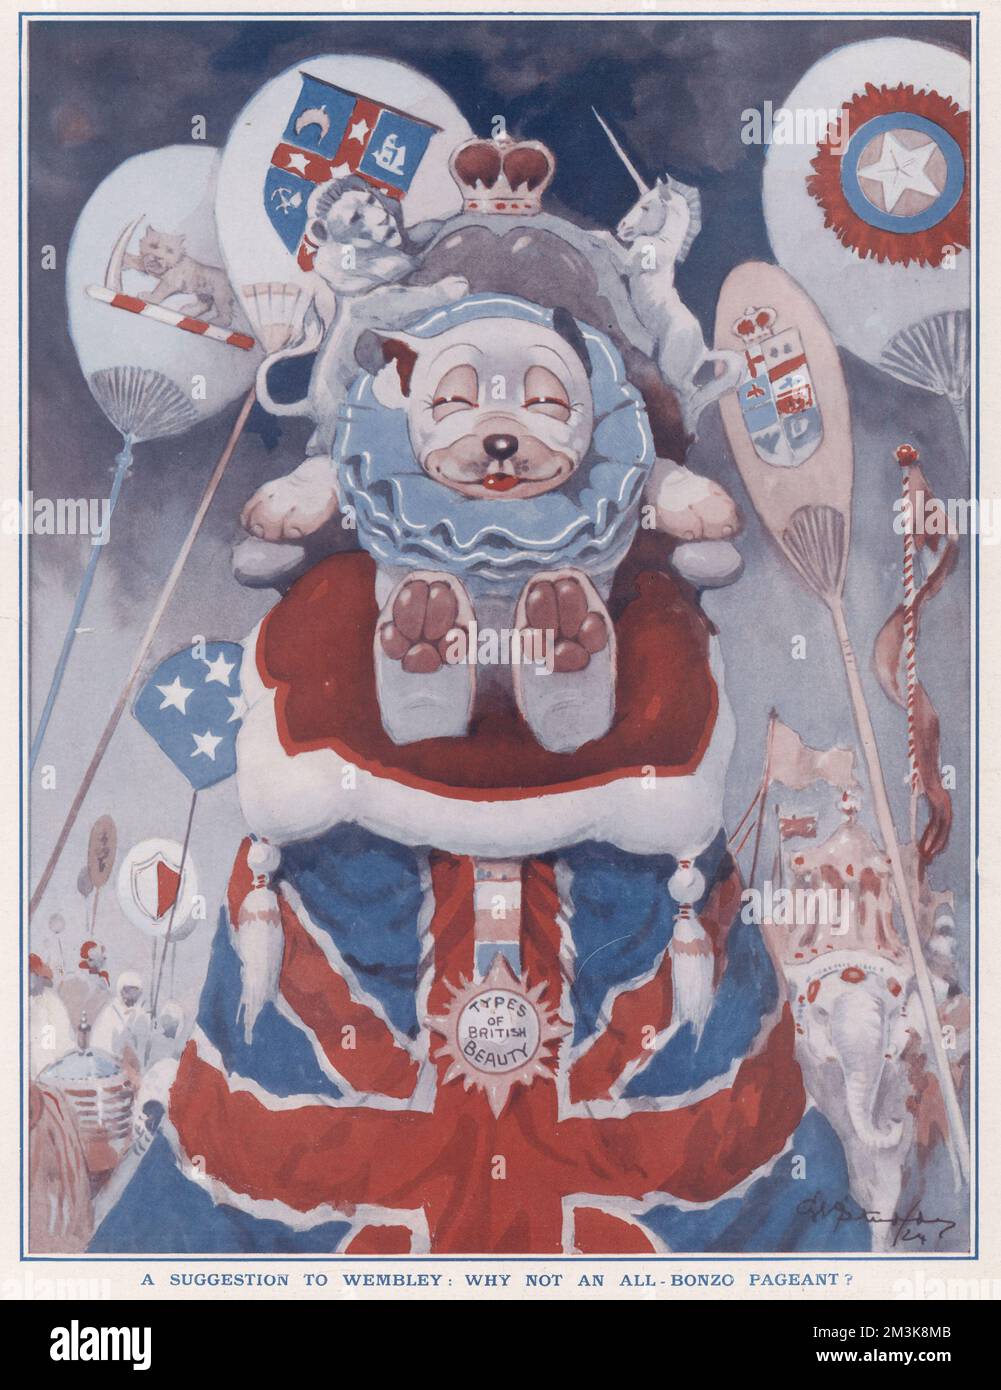 Cette illustration montre une idée de l'exposition de l'Empire britannique qui a eu lieu à Wembley en 1924. George Ernest Studdy (1878-1948) est le créateur de 'Bonzo', un petit chien aux yeux soucoupes et à l'élevage indiscriminé qui est apparu pour la première fois dans The Sketch en 1922. La folie « Bonzo » a balayé le monde, avec des cartes postales, des annuals, des jouets et d'autres marchandises. Studdy a également produit un grand corps de travail pour l'esquisse avant et après Bonzo y compris sa création ultérieure, Ooloo le chat. Ses premiers chiens de dessin animé étaient simplement connus sous le nom de 'chien tuddy' jusqu'à ce que les lecteurs demandent un nom et Bruce Ingram, l'il Banque D'Images